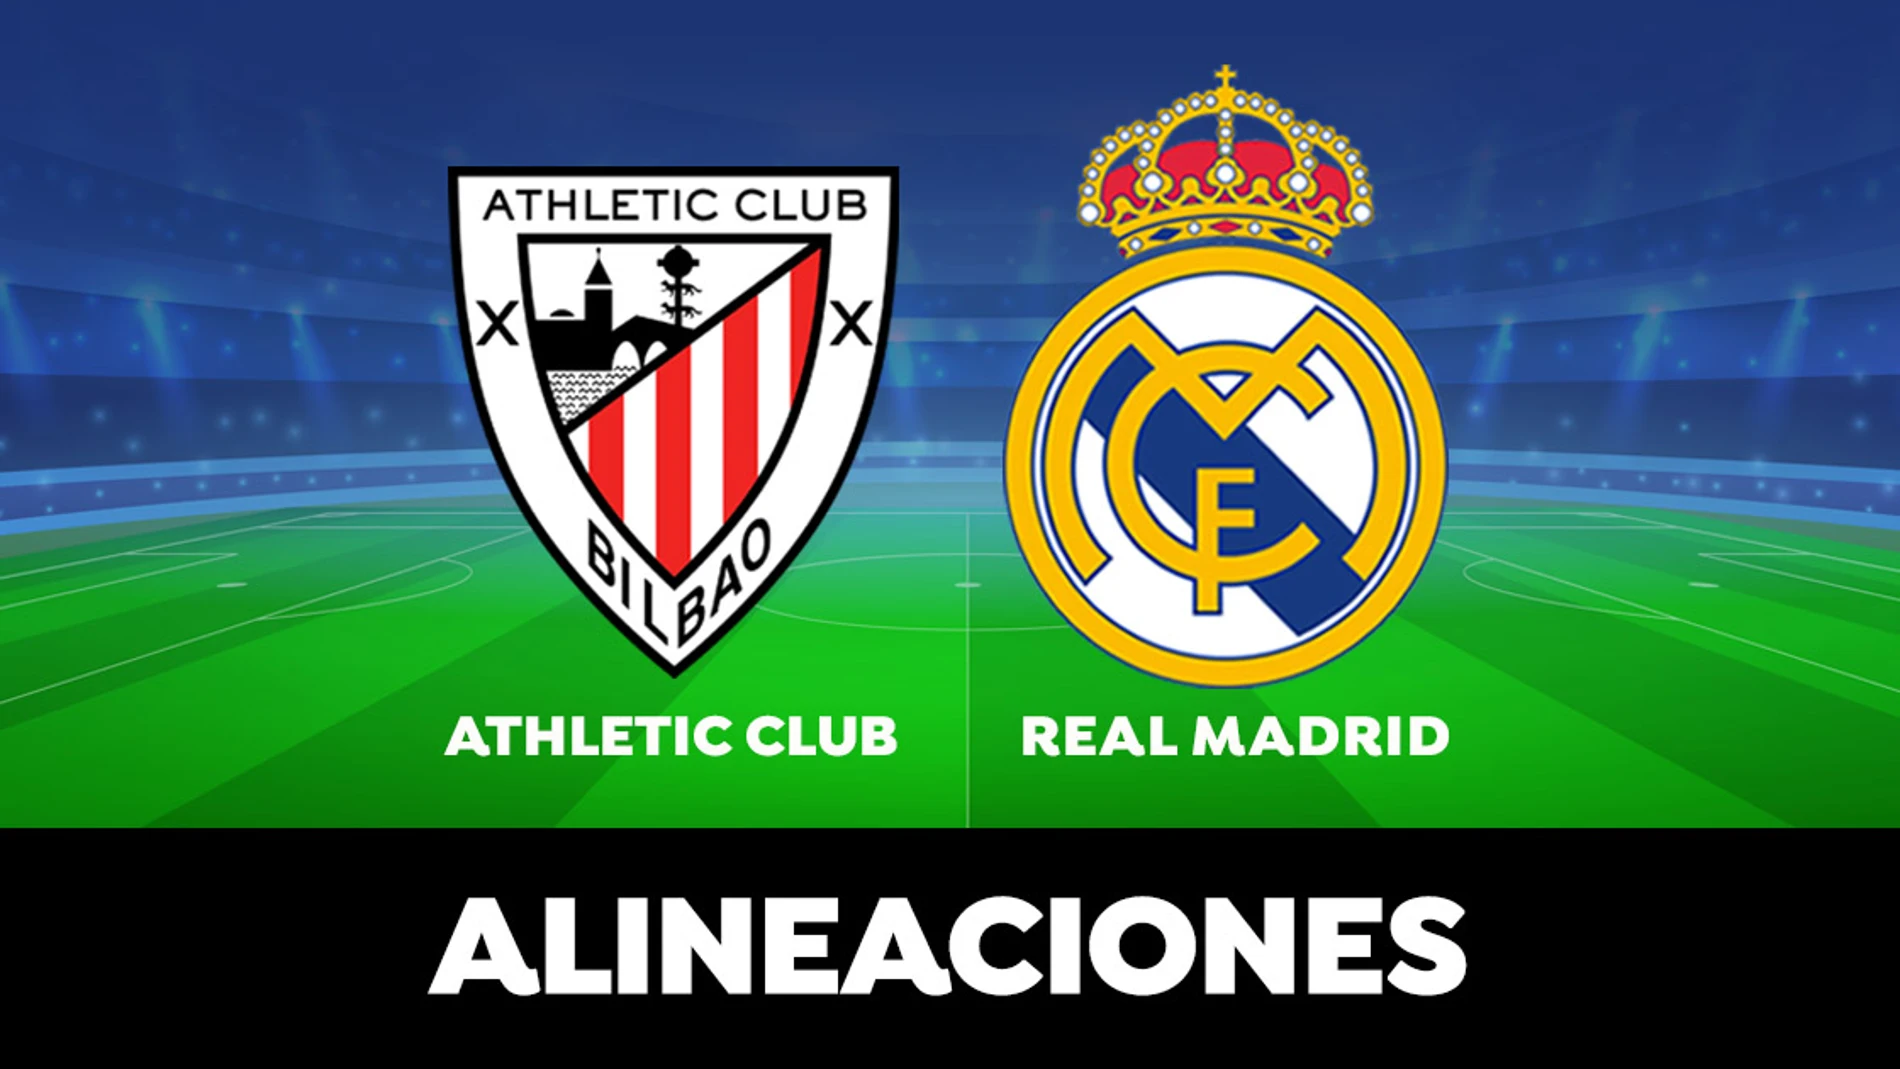  Alineación oficial del Real Madrid contra el Athletic Club en el partido de la Liga Santander